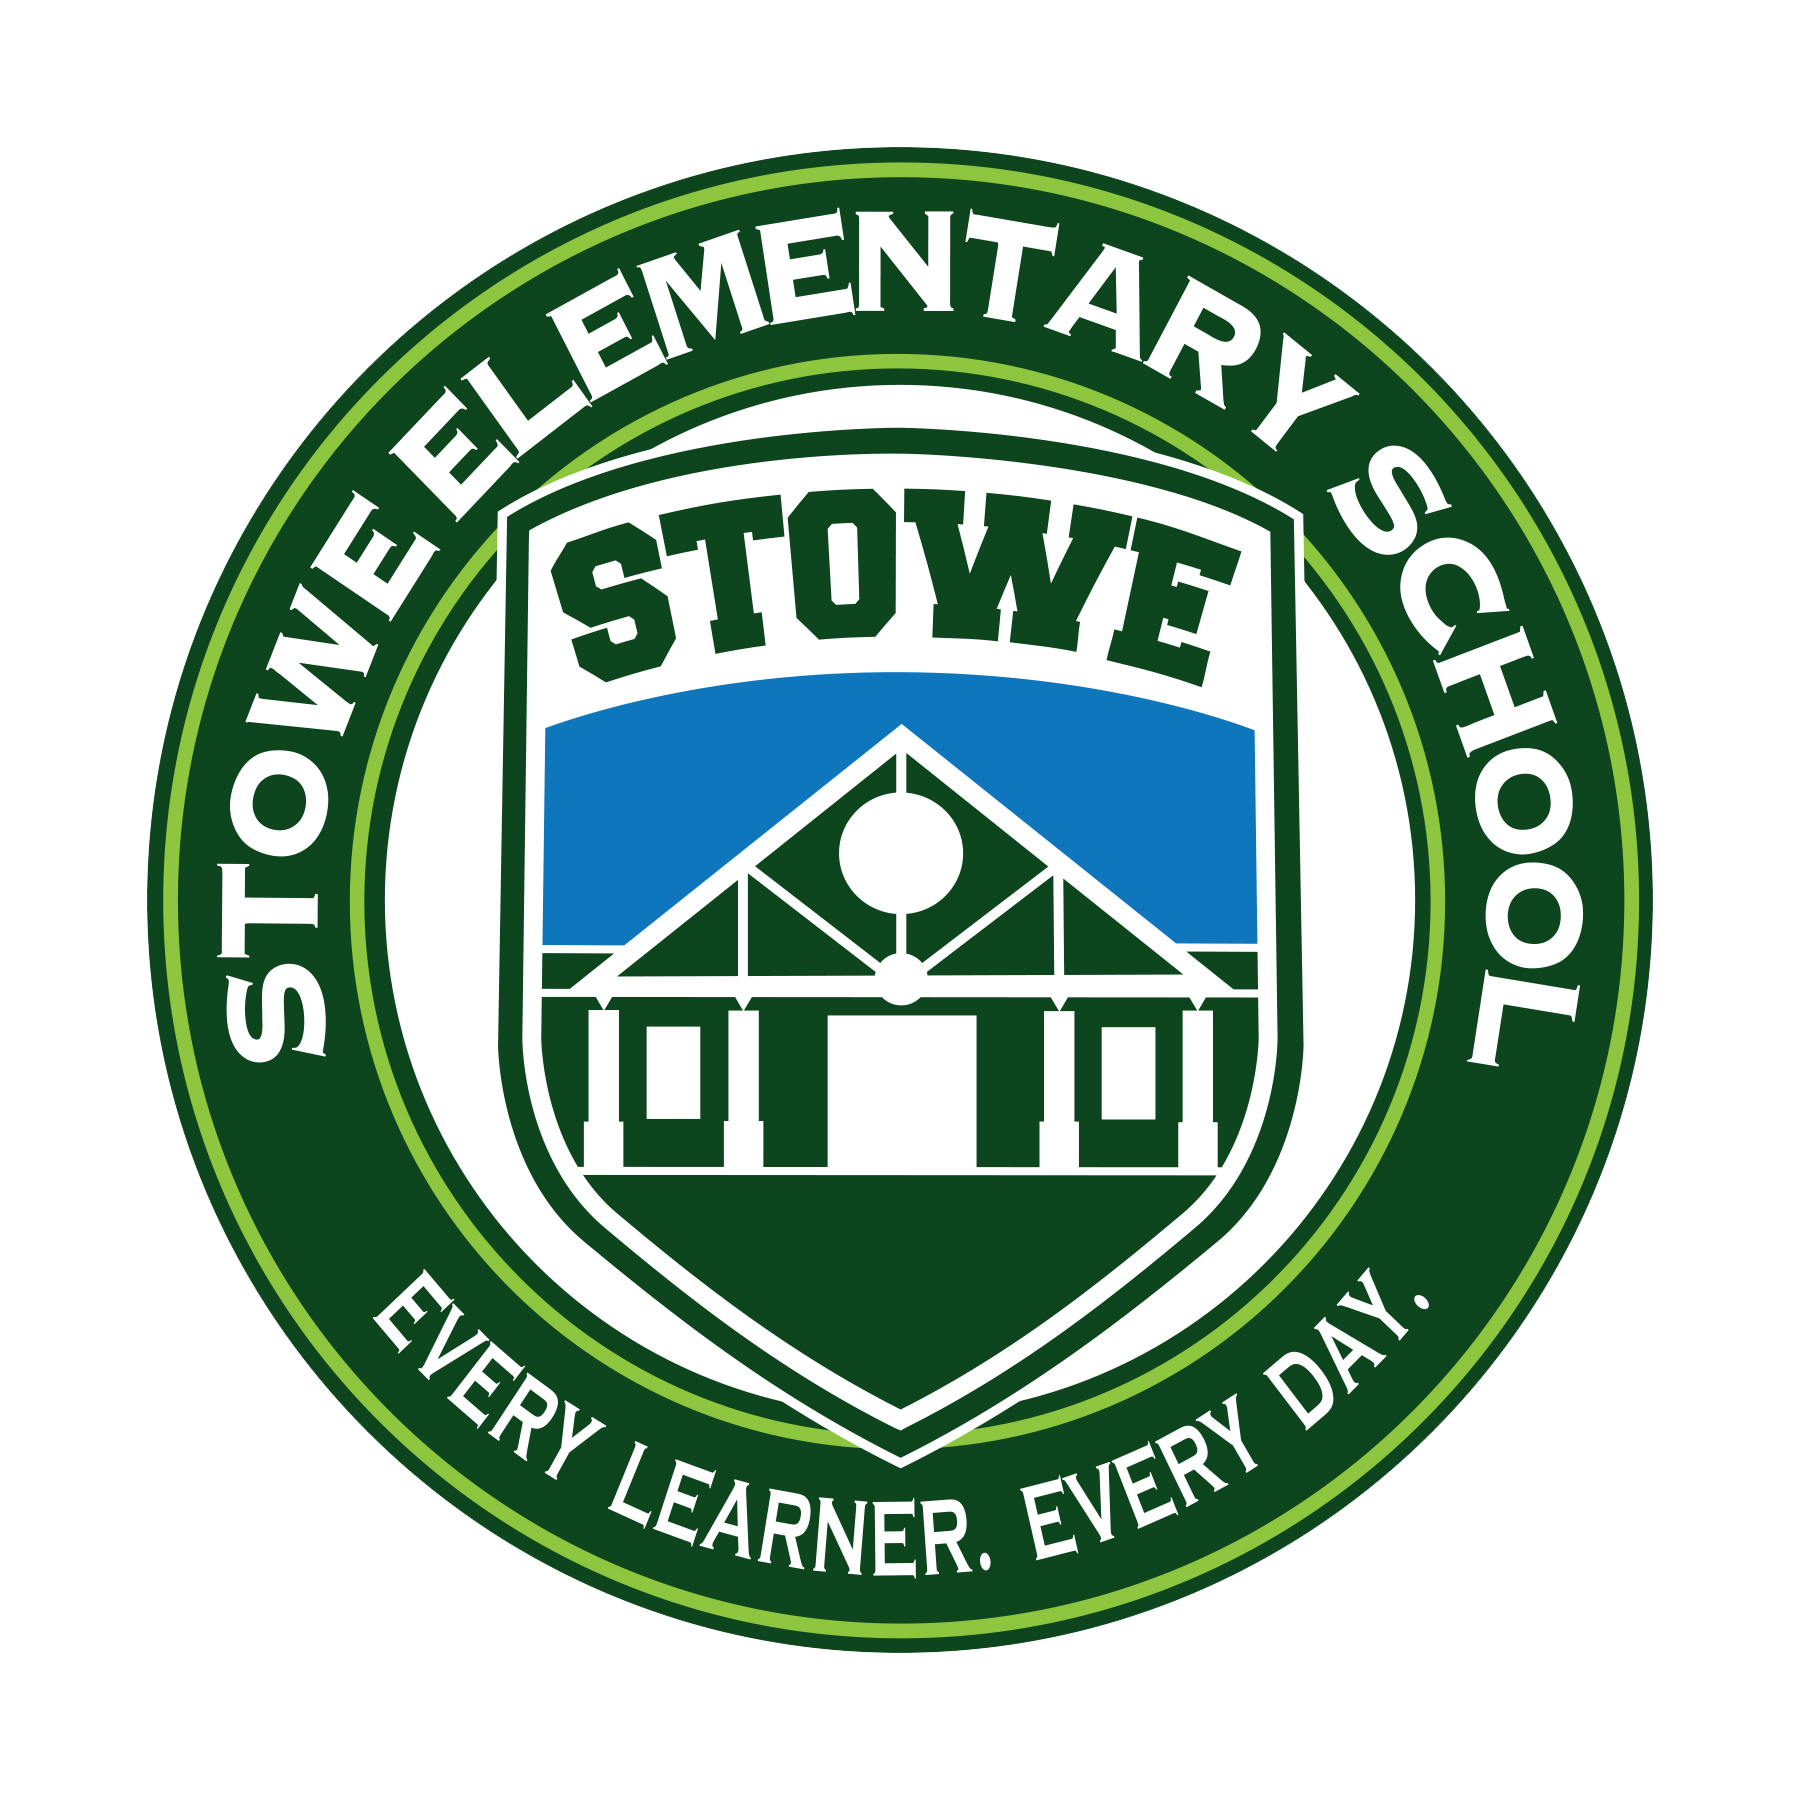 Stowe Elementary School Logo.png